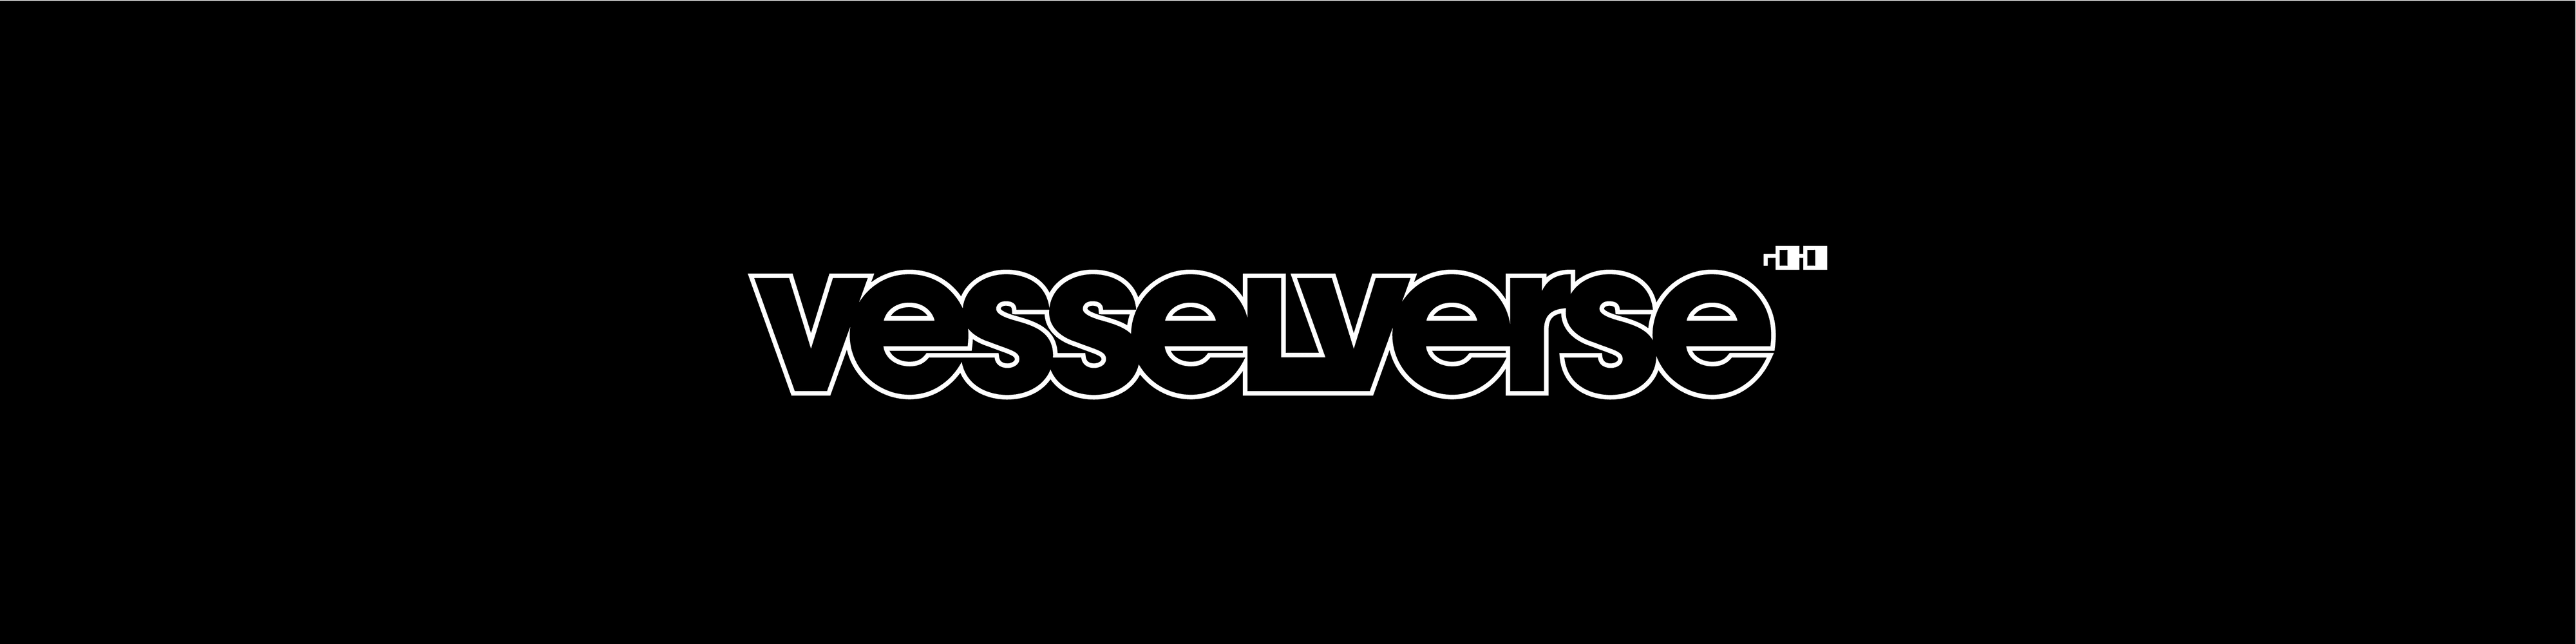 VesselVerse banner